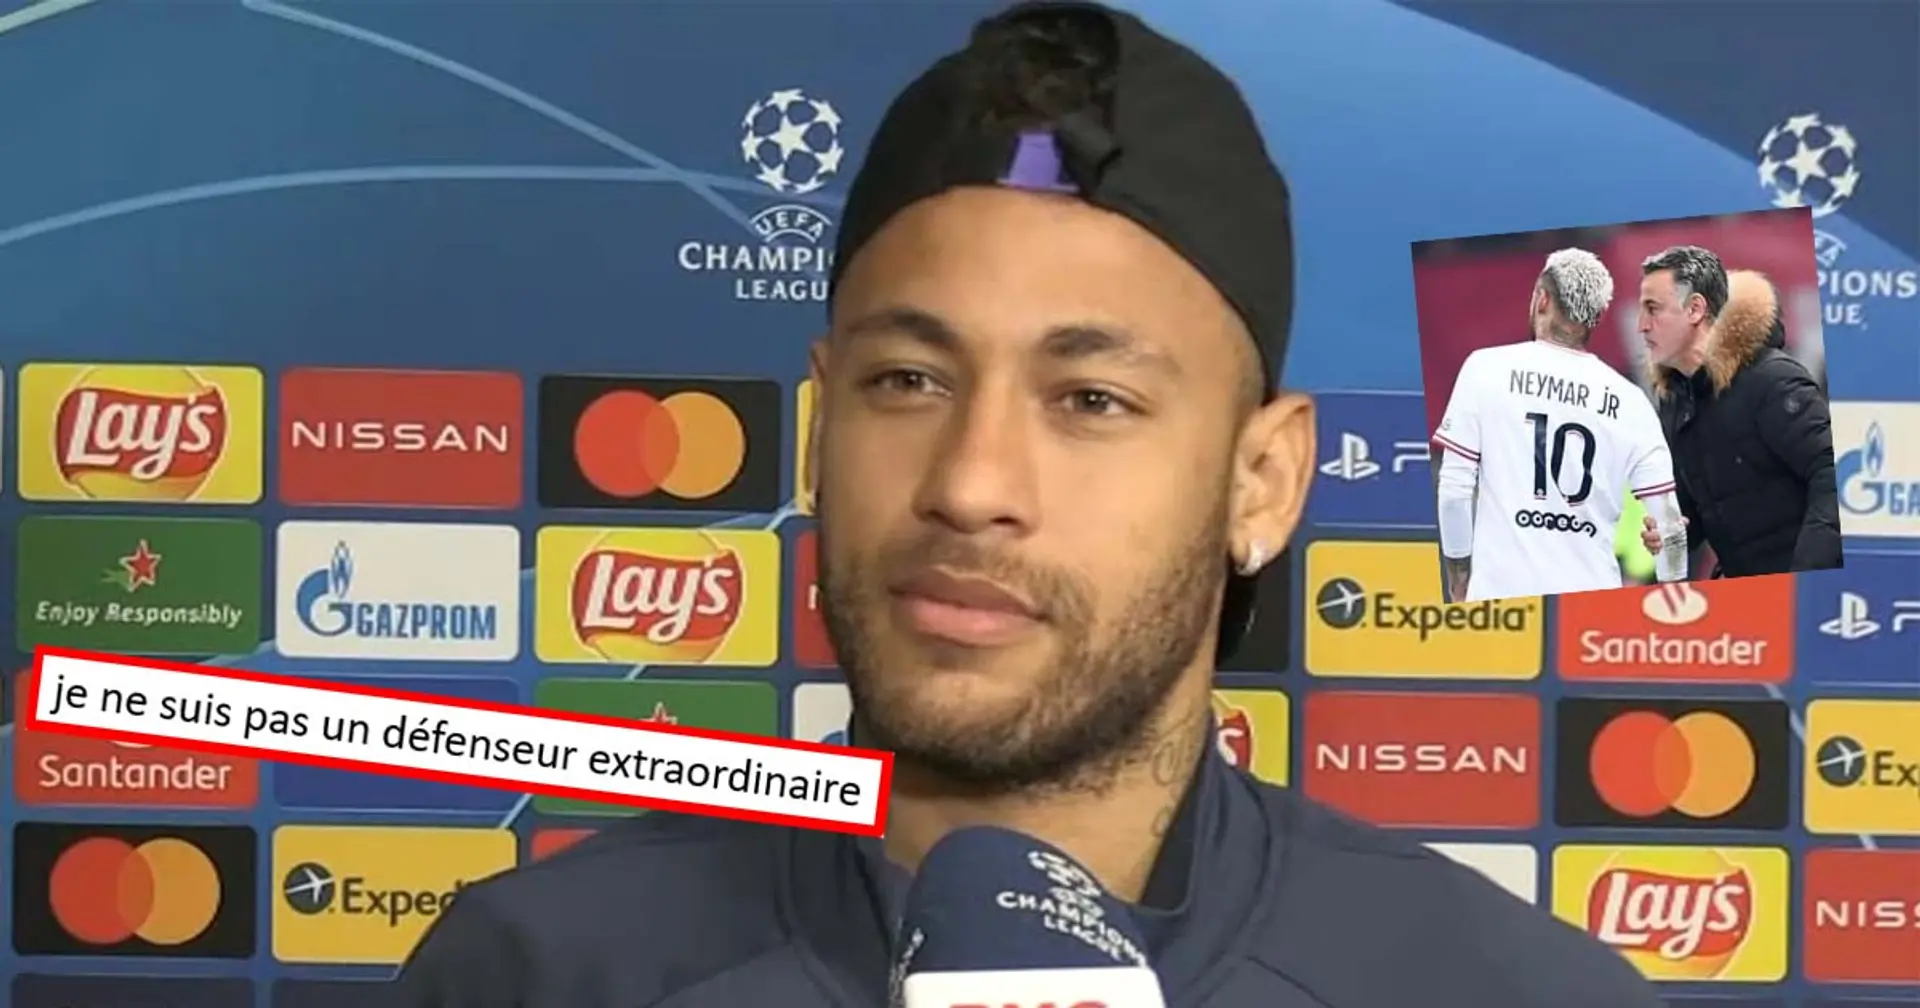 "Aider du mieux que je peux", Neymar parle de son rôle défensif au PSG et confirme son renouveau cette saison